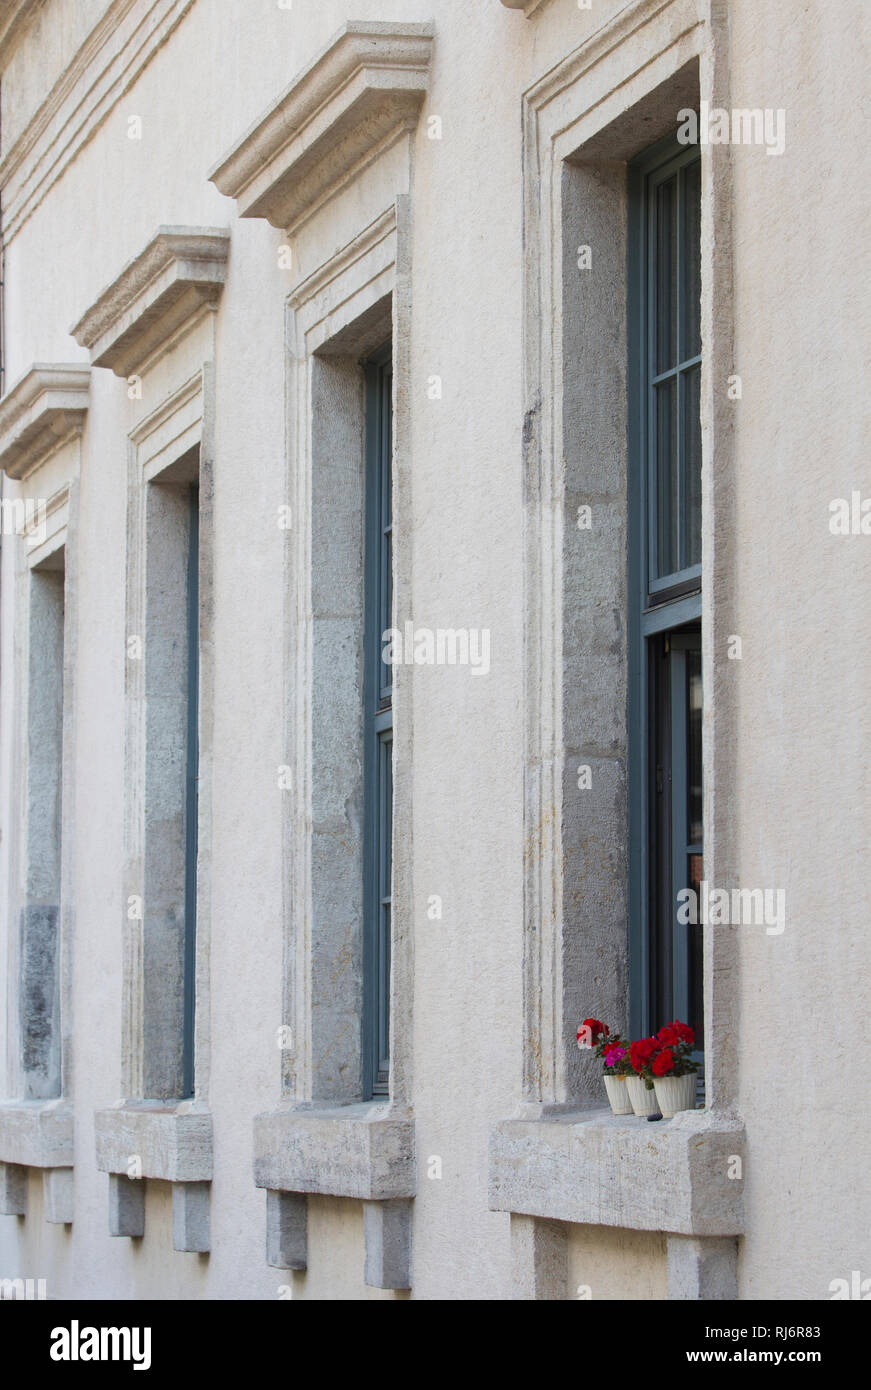 Nahaufnahme von einer Reihe von Fenstern eines klassischen Mauerwerksbau mit roten Blumen an einem der Fenster. Stockfoto